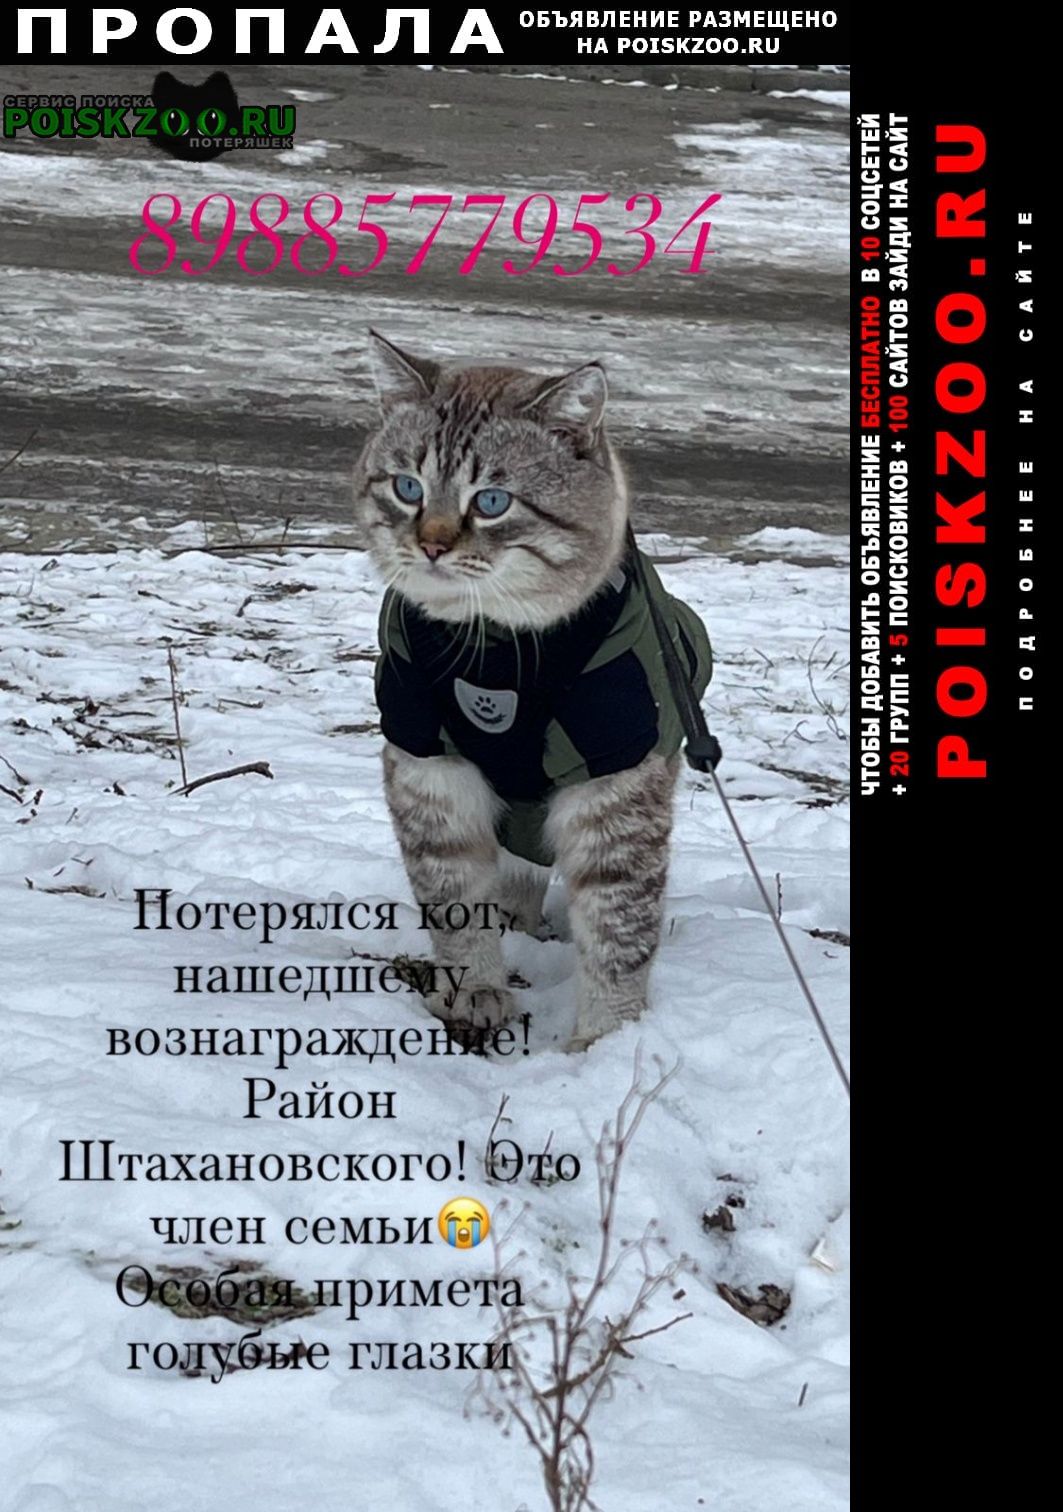 Пропал кот Ростов-на-Дону